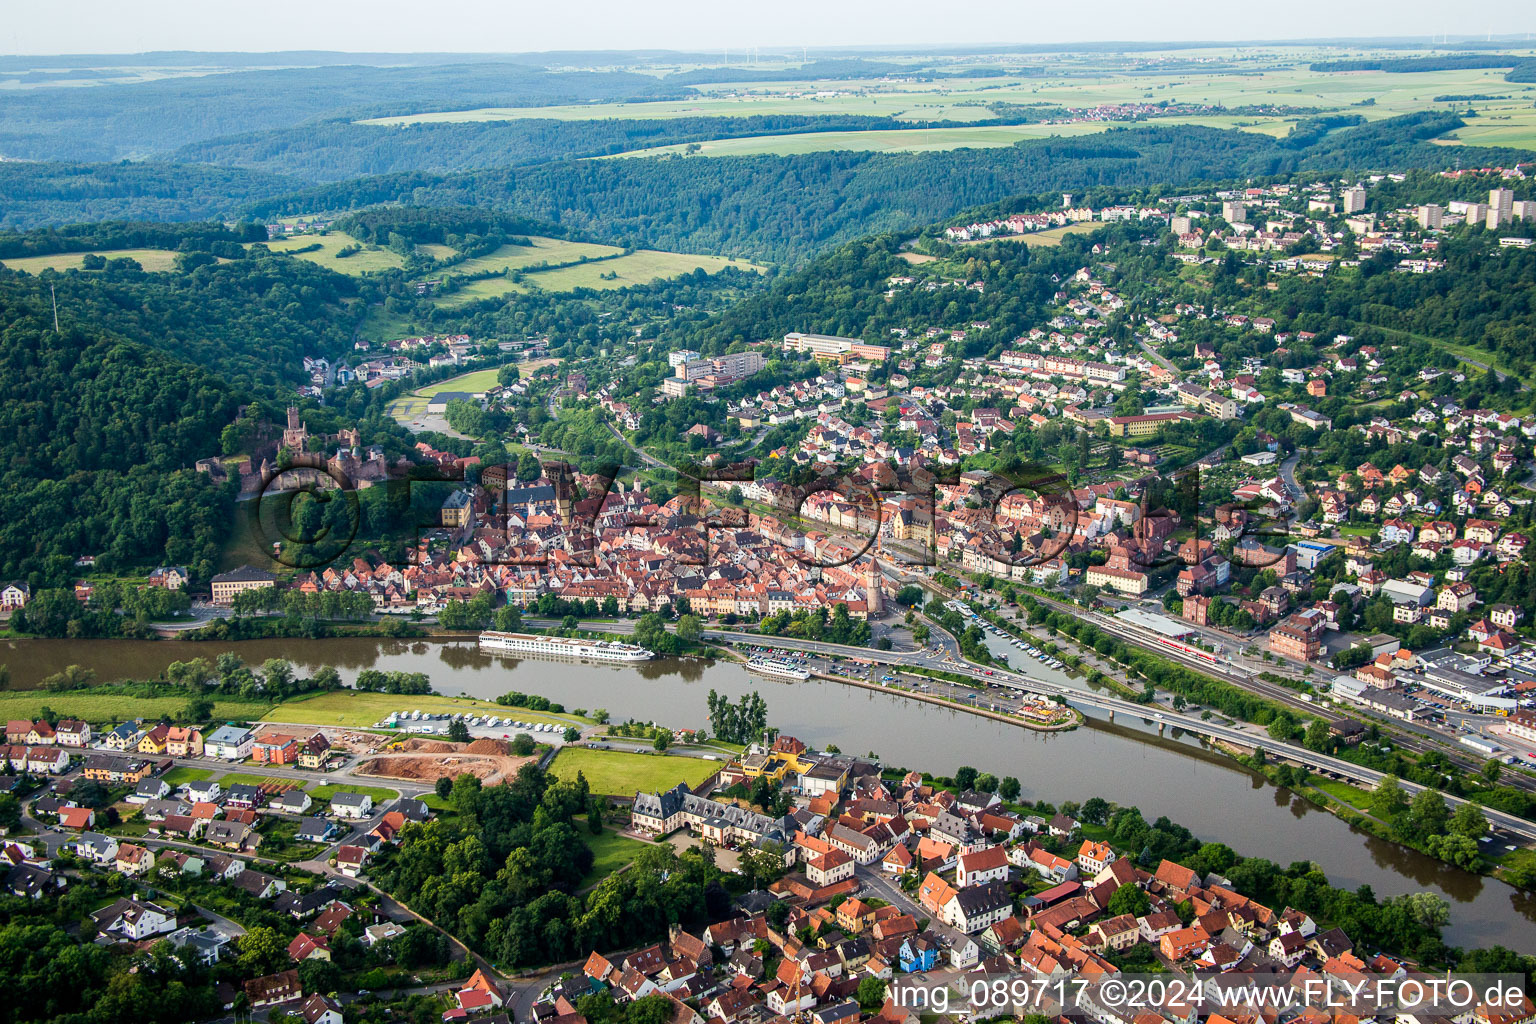 Photographie aérienne de Zones riveraines le long de l'embouchure de la Tauber dans le Main à Wertheim dans le département Bade-Wurtemberg, Allemagne